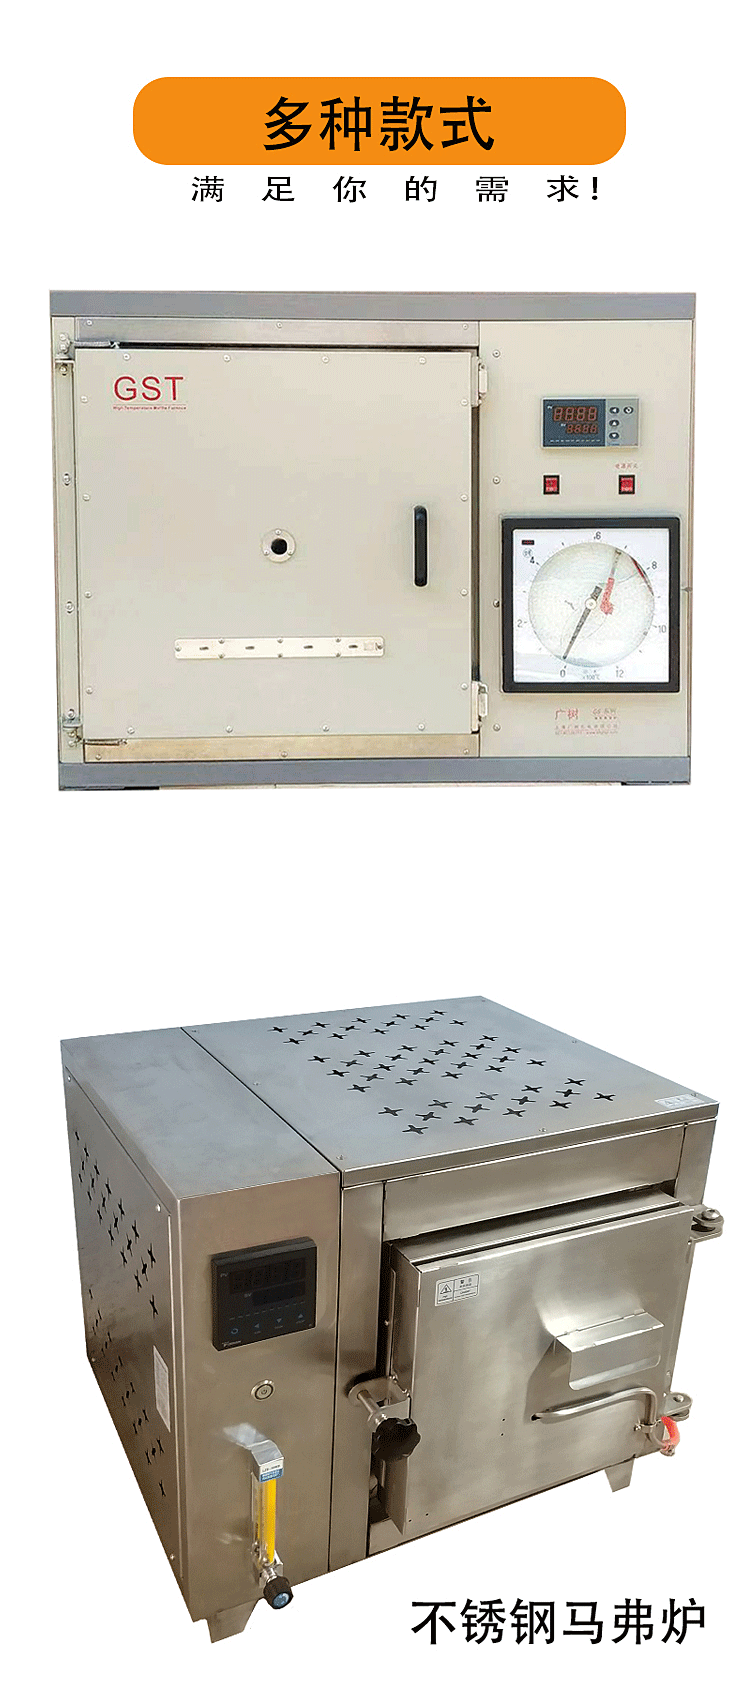 GSM-4-1000-III回火马弗炉